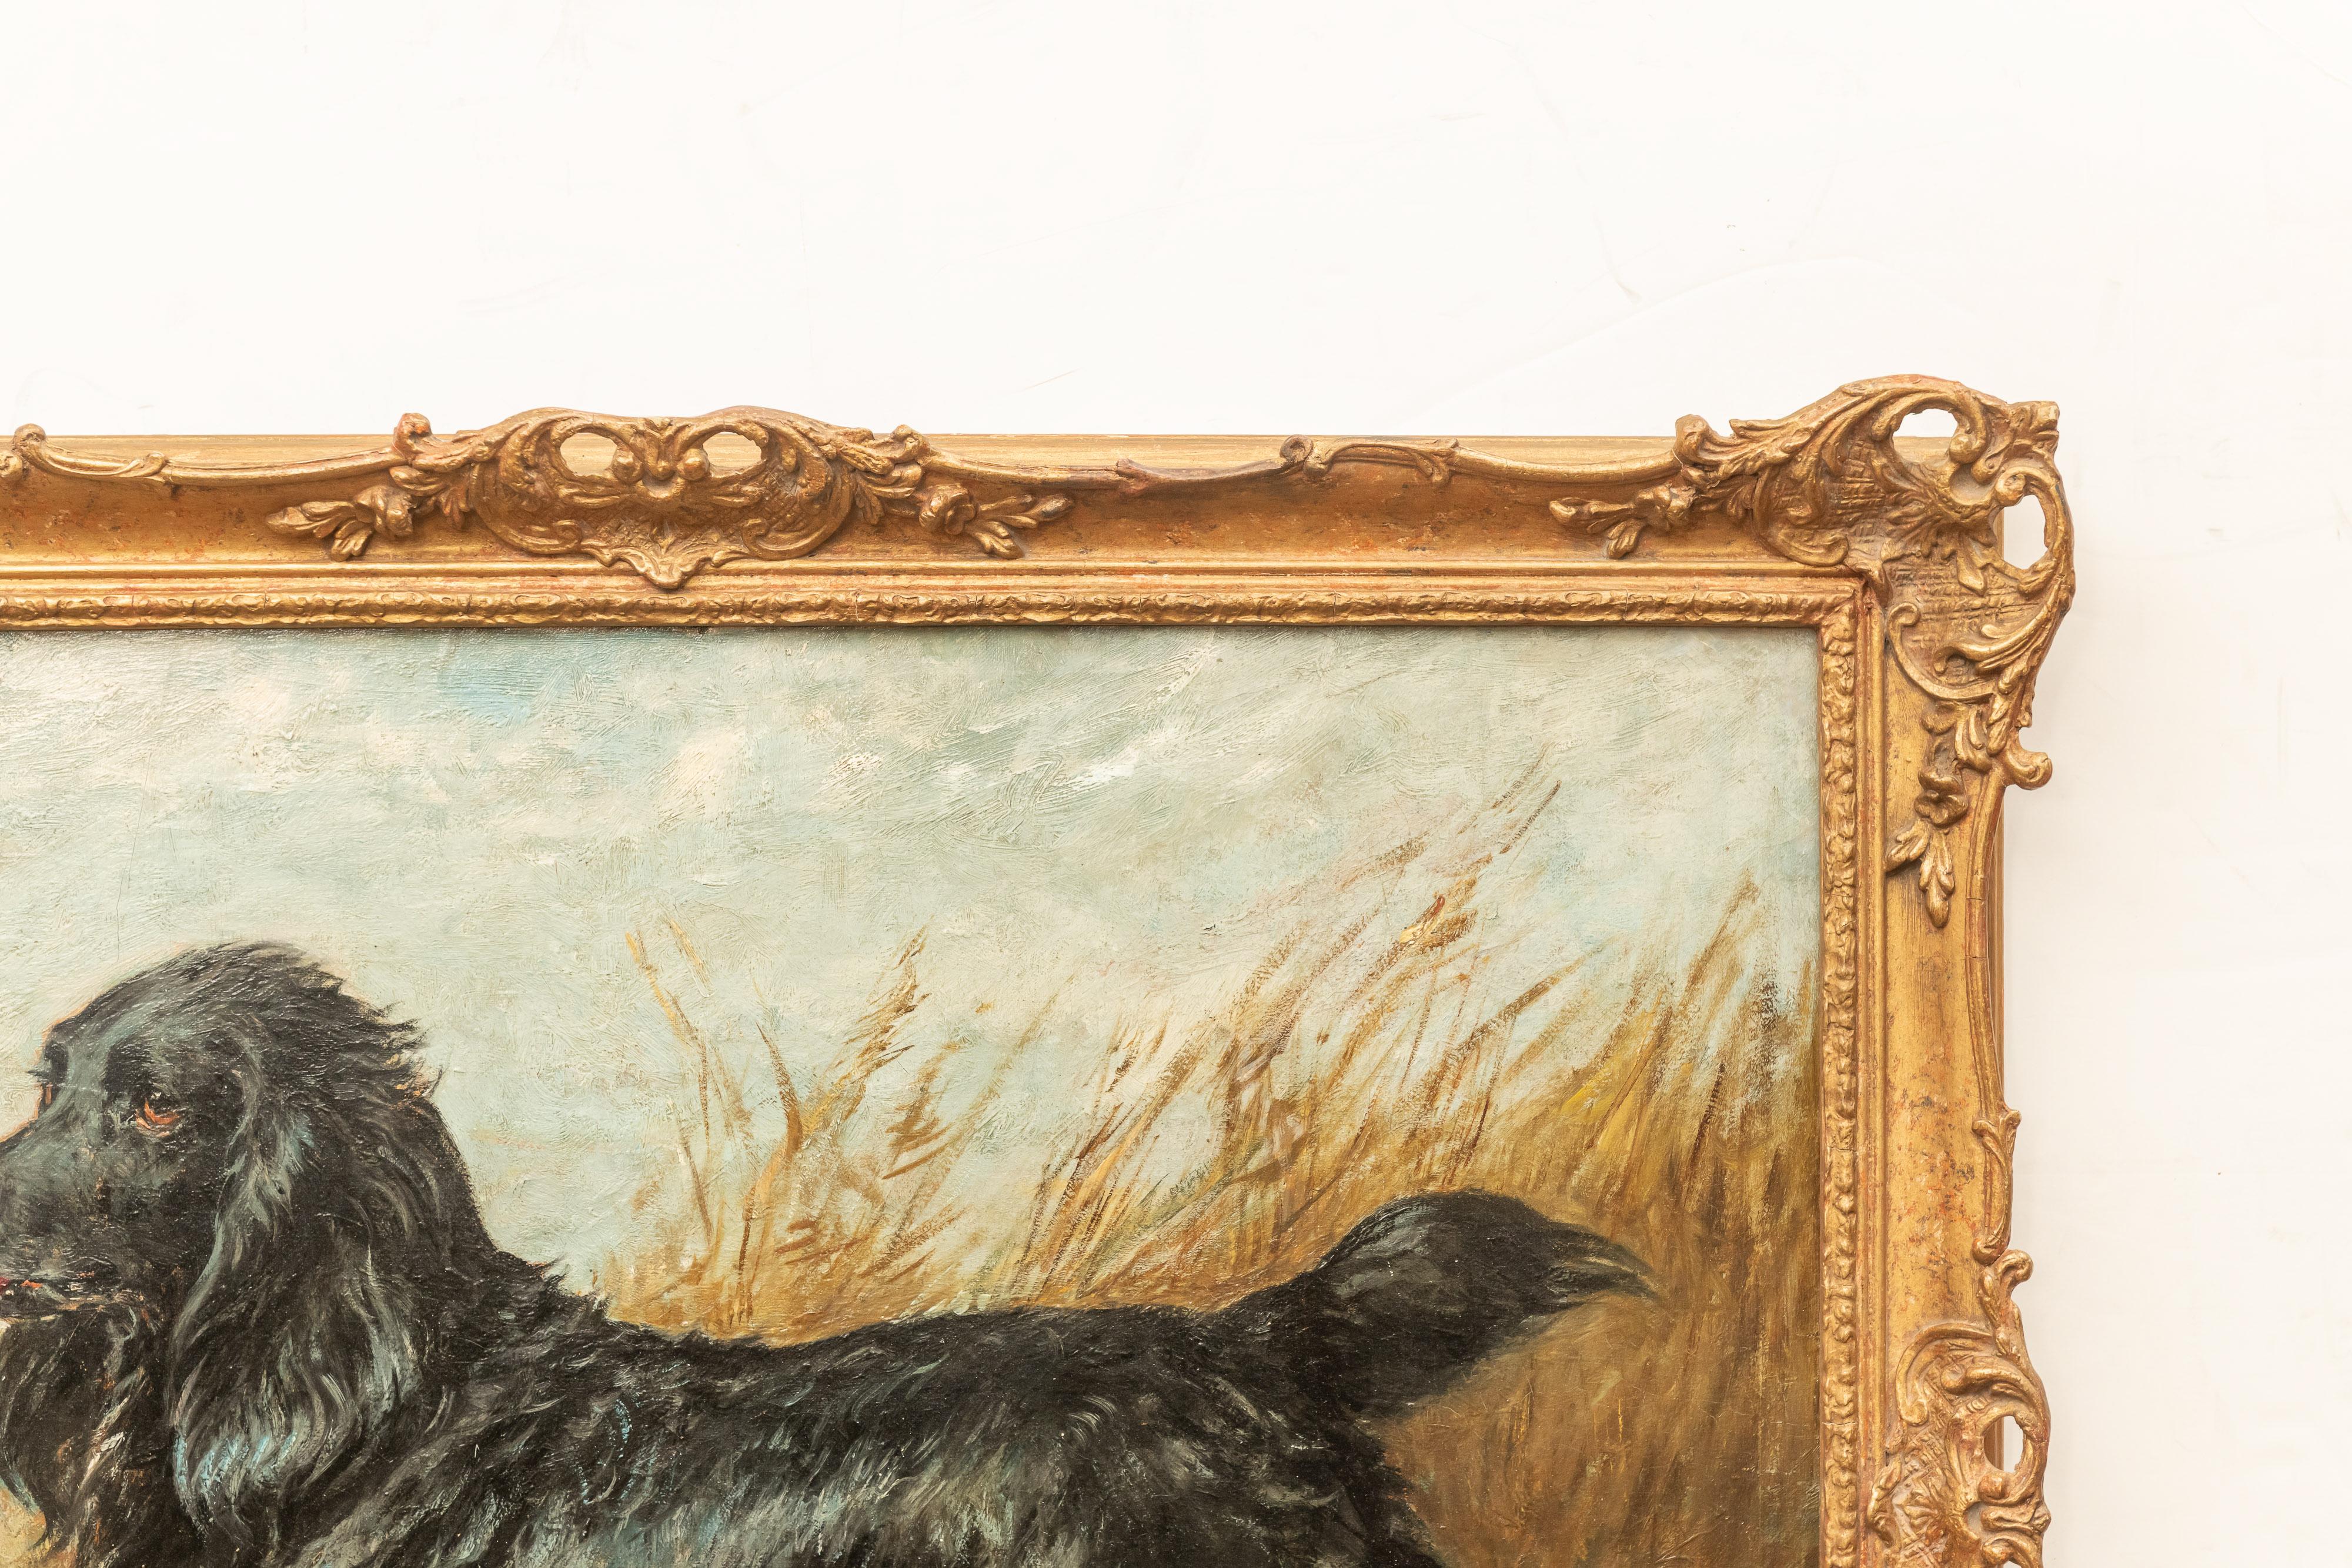 Öl auf Leinwand. Porträt eines schwarzen Spaniels mit einer Ente von John Emms, (Blofield, Norfolk, 1841-1912) signiert und datiert unten rechts: JNP Emms / 95'
26